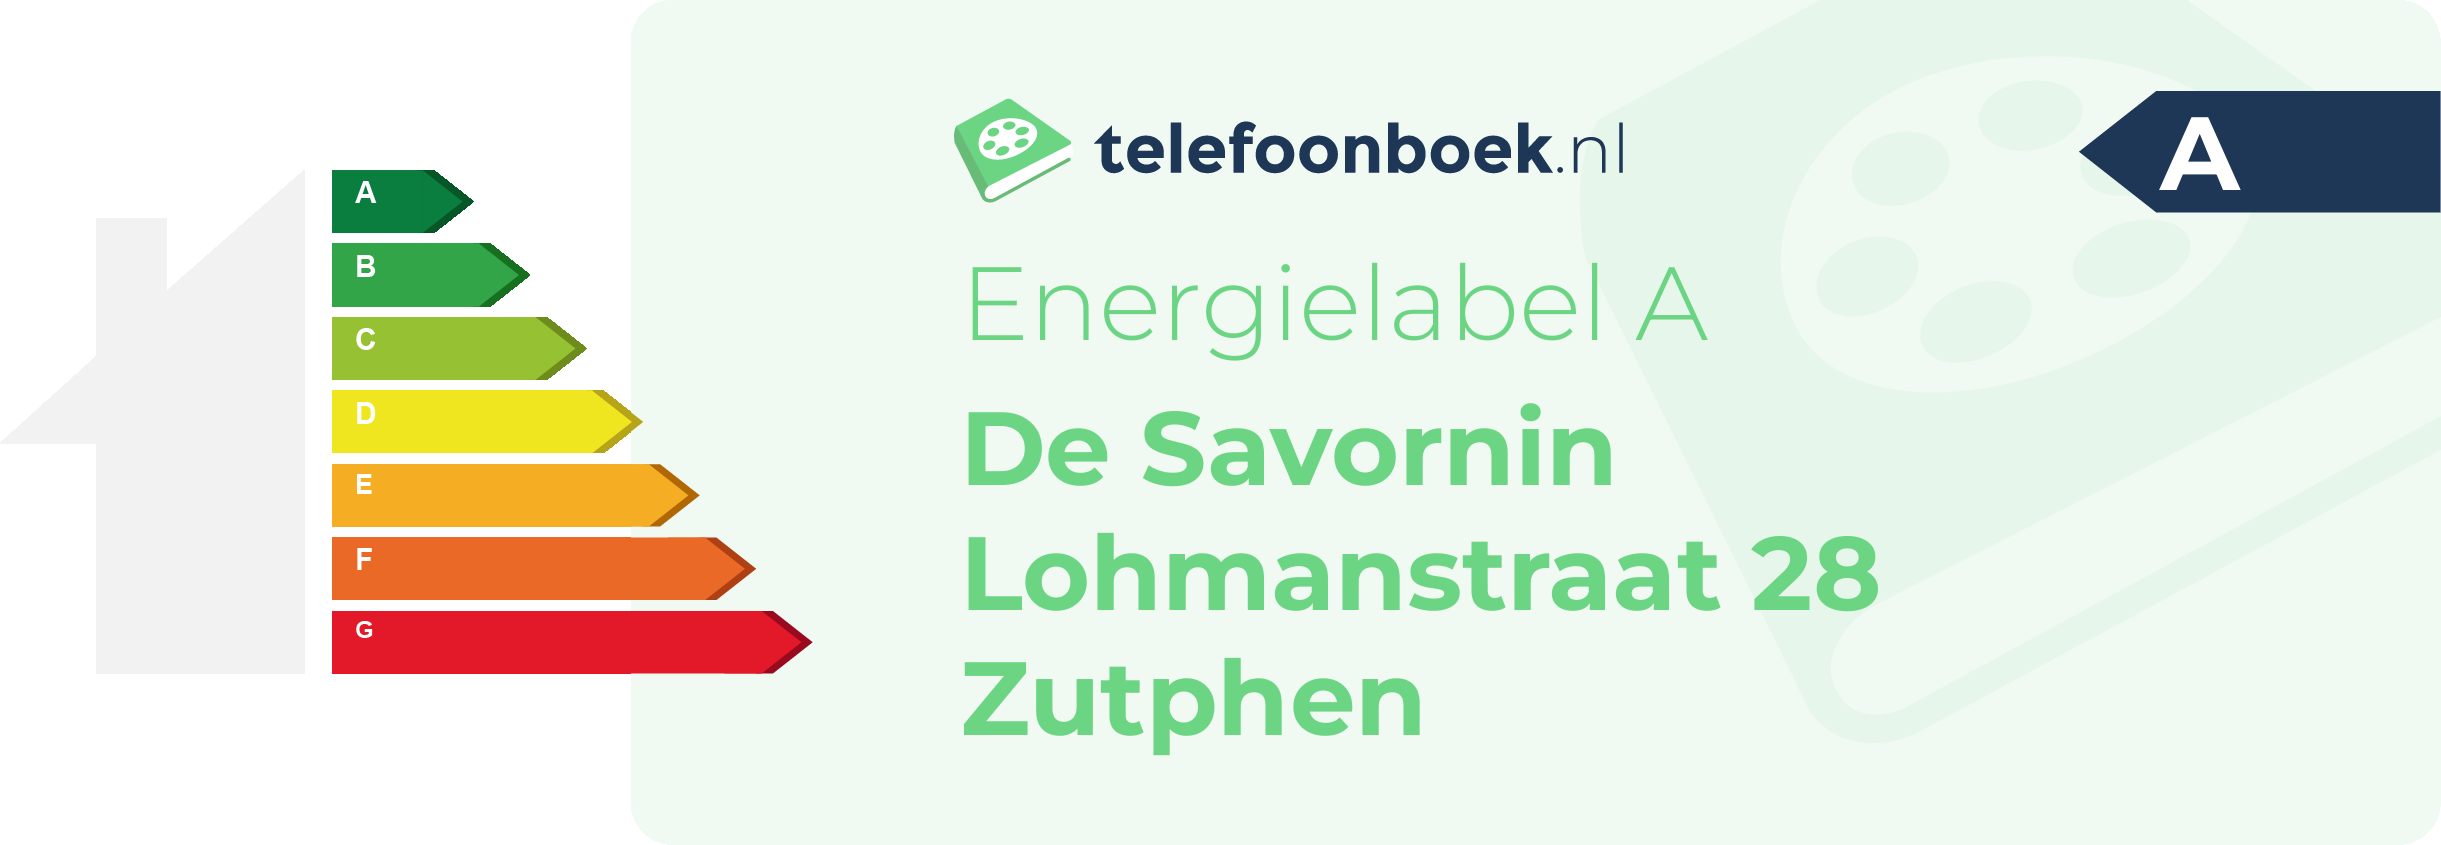 Energielabel De Savornin Lohmanstraat 28 Zutphen